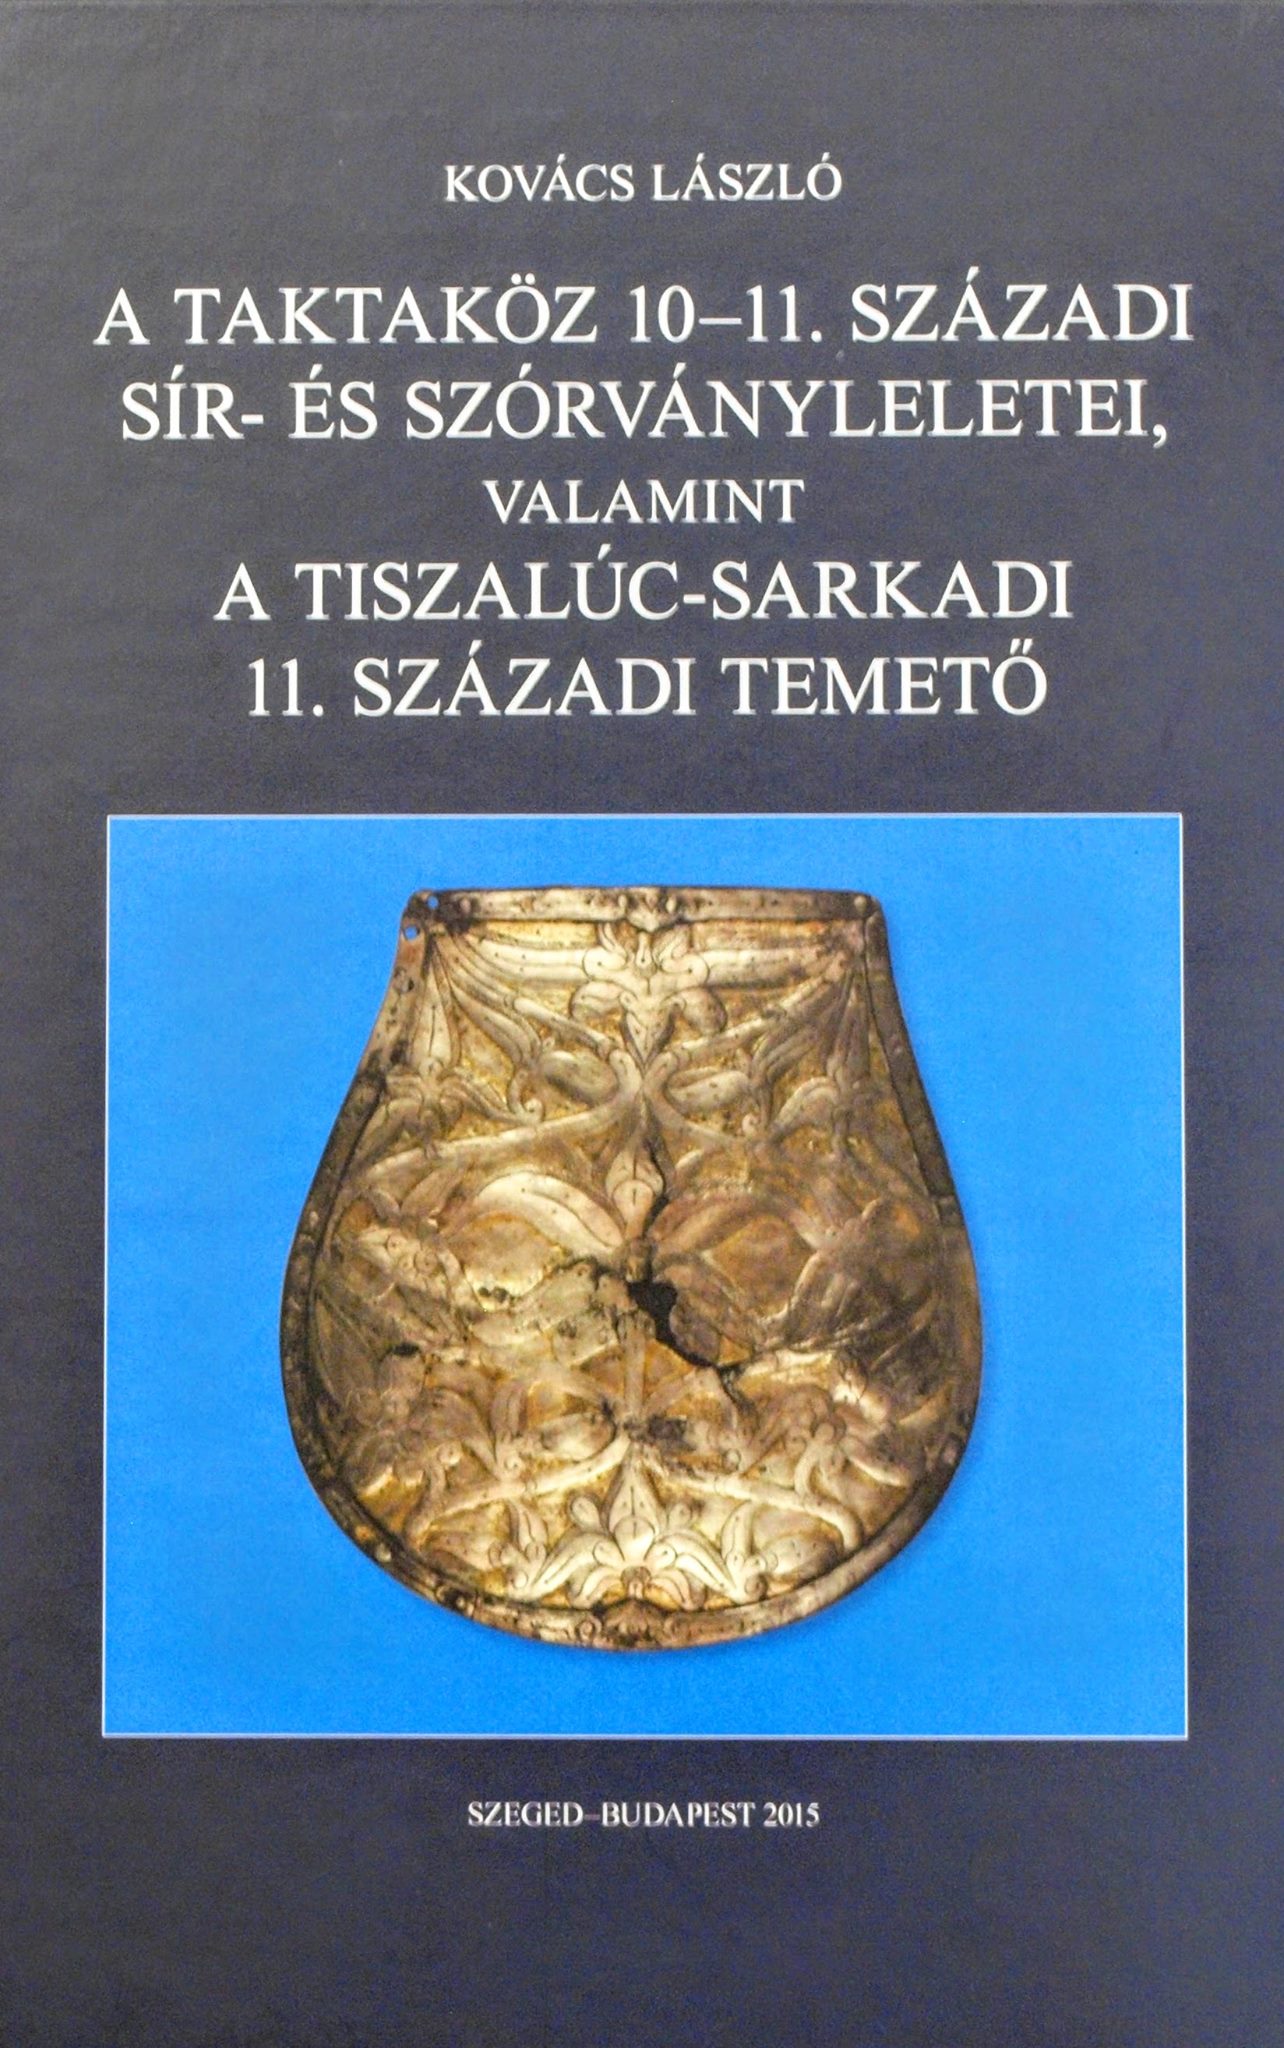 Kovács László kötetének bemutatója a Régészeti Intézetben